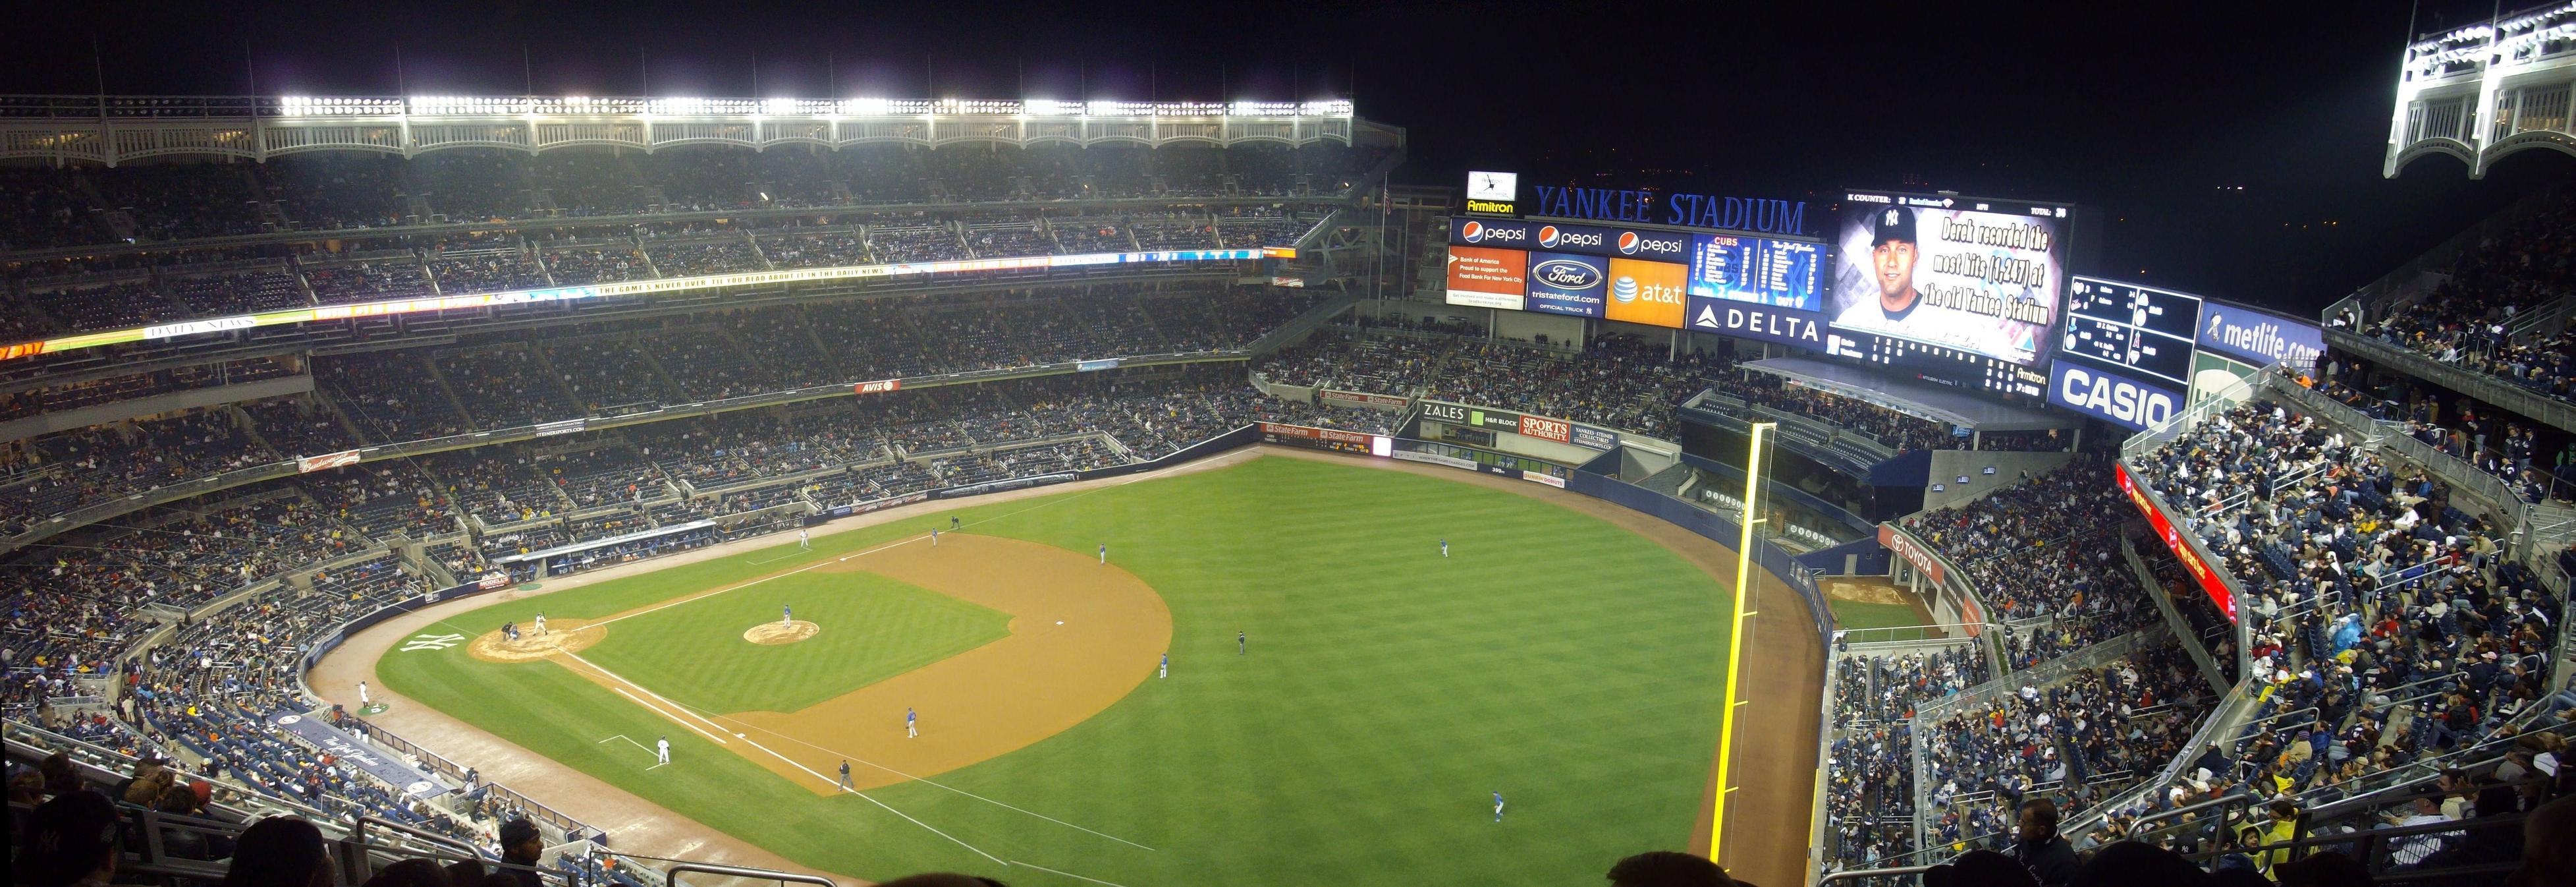 Yankee Stadium At Night